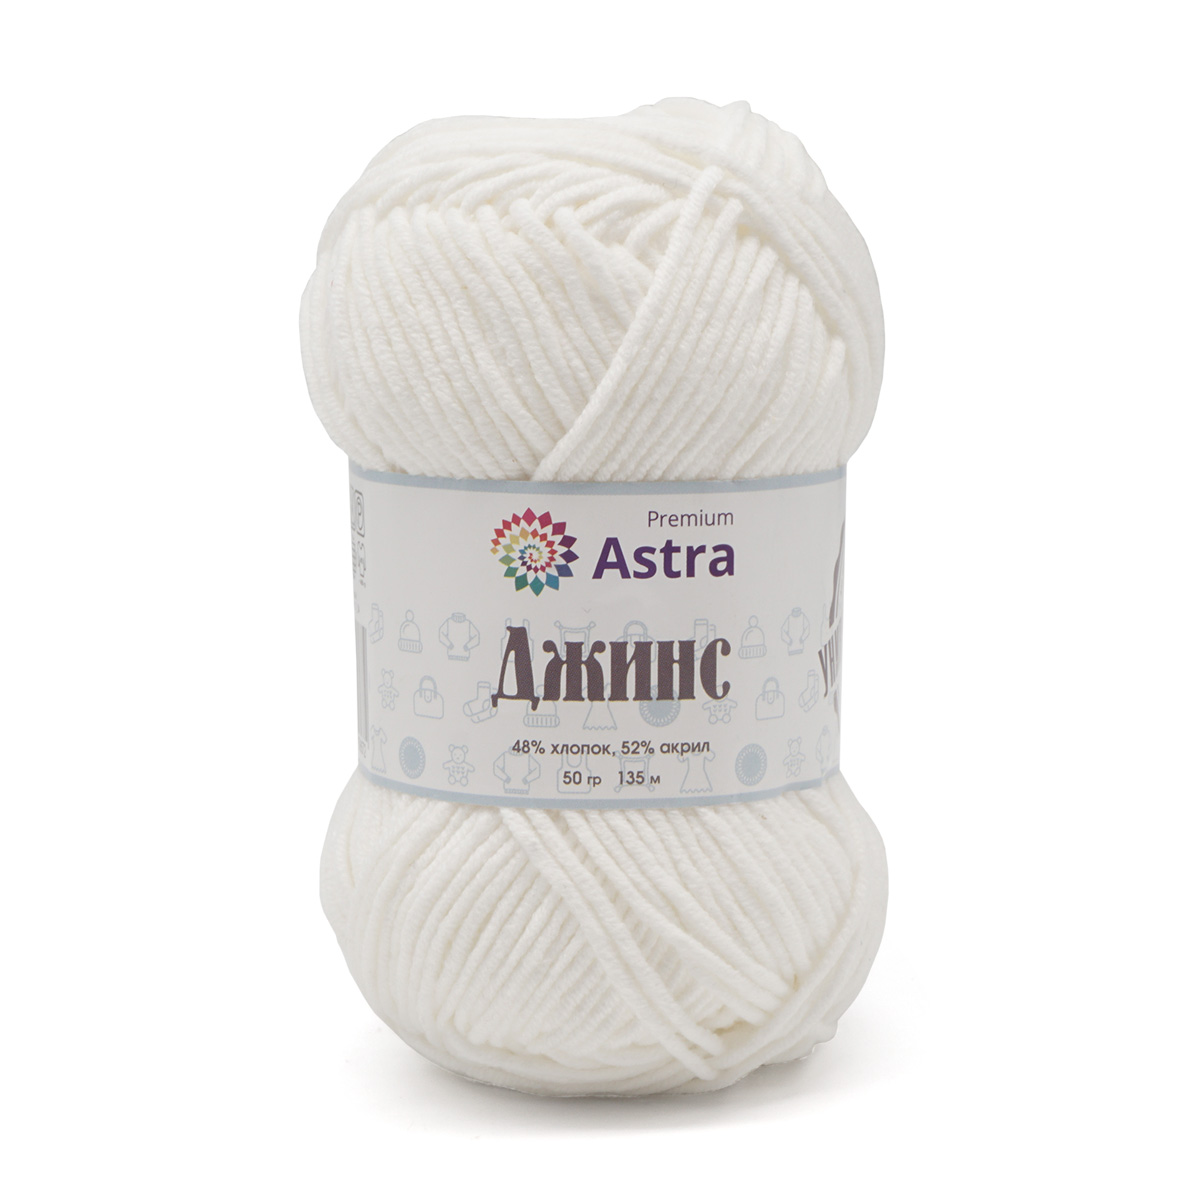 Пряжа для вязания Astra Premium джинс для повседневной одежды акрил хлопок 50 гр 135 м 001 белый 4 мотка - фото 8